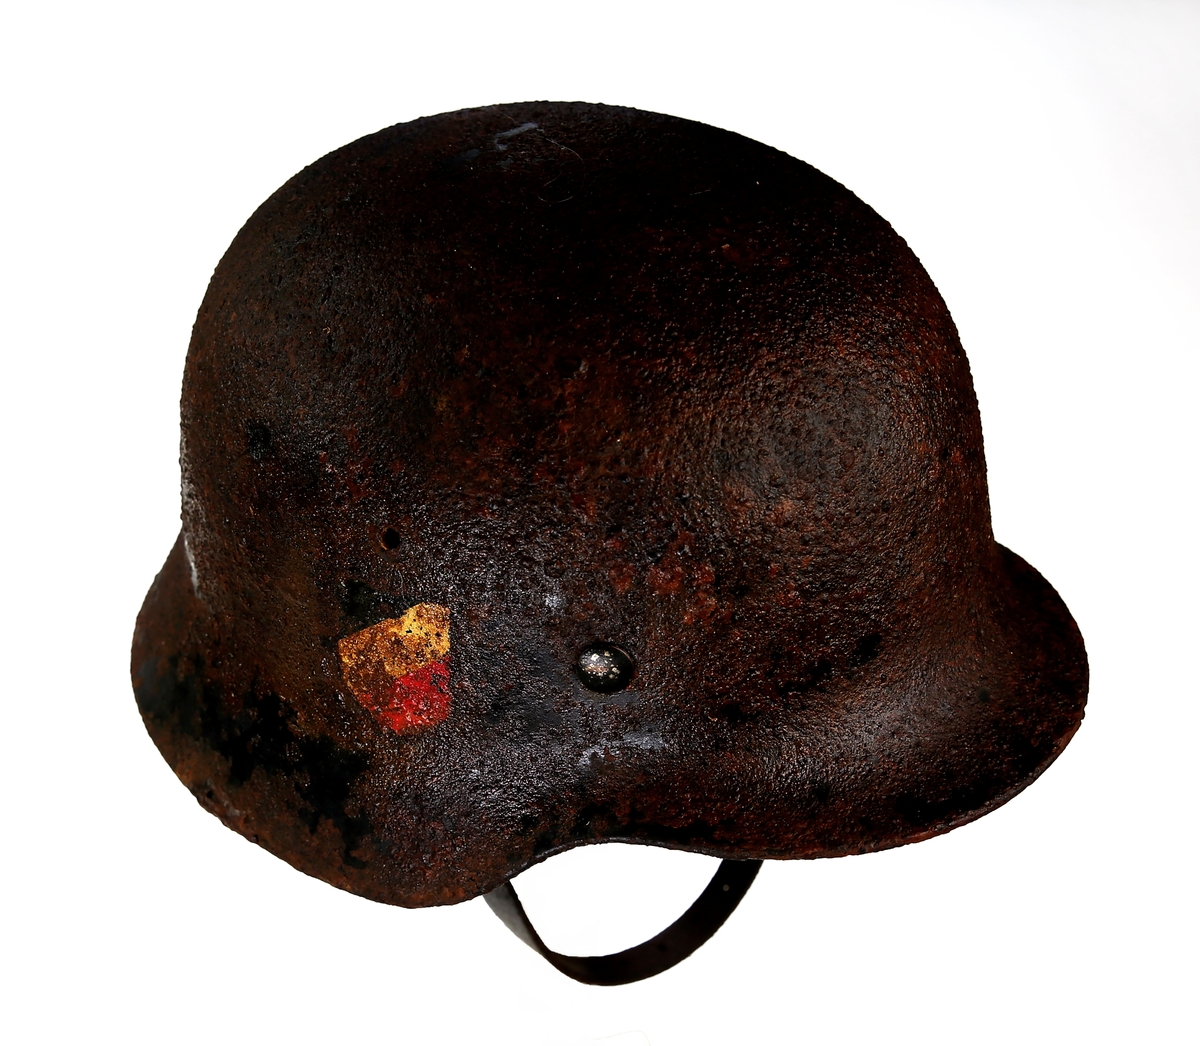 Tysk hjelm for Luftforsvaret m/40
Levert tilbake. Er ikke lengere i vår samling. Besluttet av inntakskomiteen